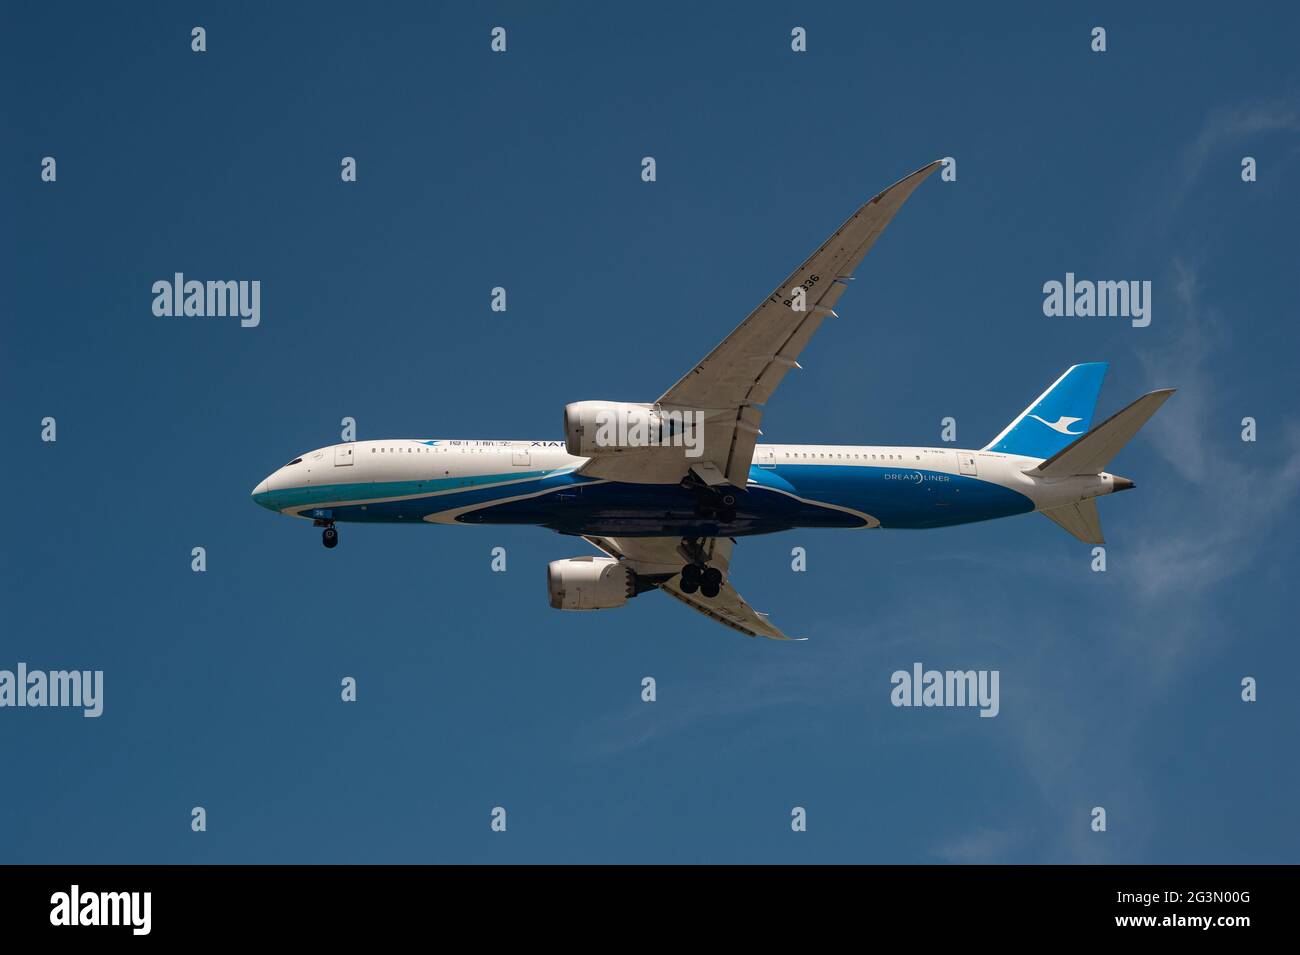 '07.04.2021, Singapore, Singapore - un aereo passeggeri Xiamen Air del tipo Boeing 787-9 Dreamliner con registrazione B-7836 sull'avvicinamento a Changi I. Foto Stock